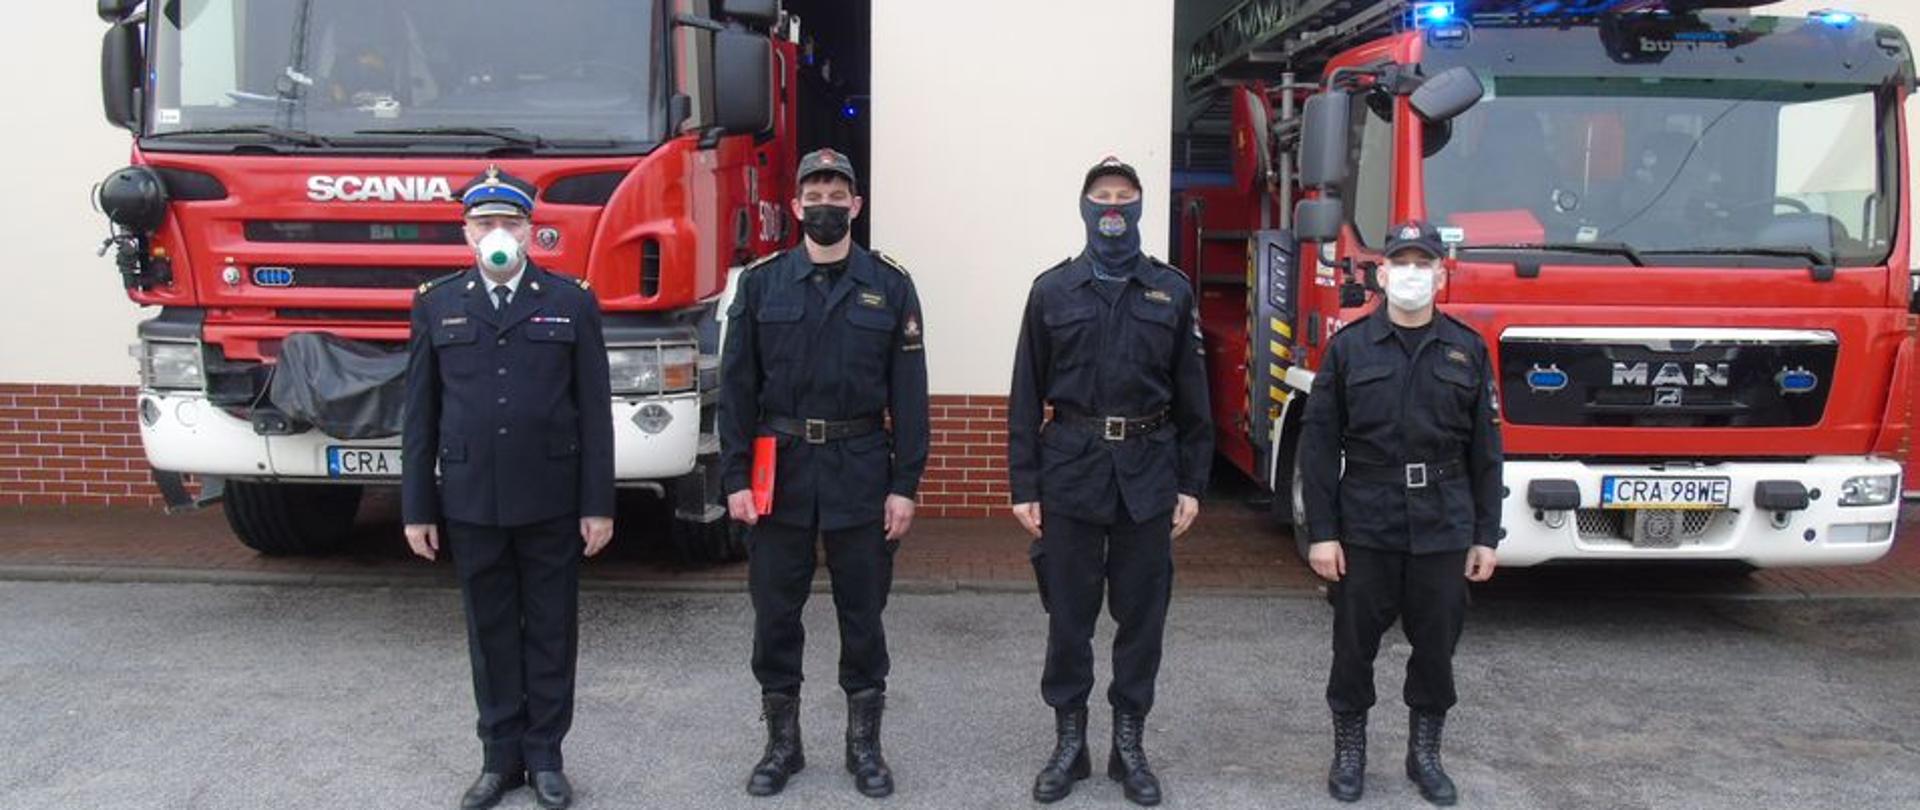 Na pierwszym planie stoi czterech strażaków. Wszyscy w maseczka jeden strażak po lewej stronie ubrany w mundur wyjściowy ( gabardyna), pozostali strażacy ubrani w mundury dowódczo-sztabowe. W tle wydać dwa czerwone pojazdy pożarnicze, ustawione przodem (widoczne kabiny załogi).